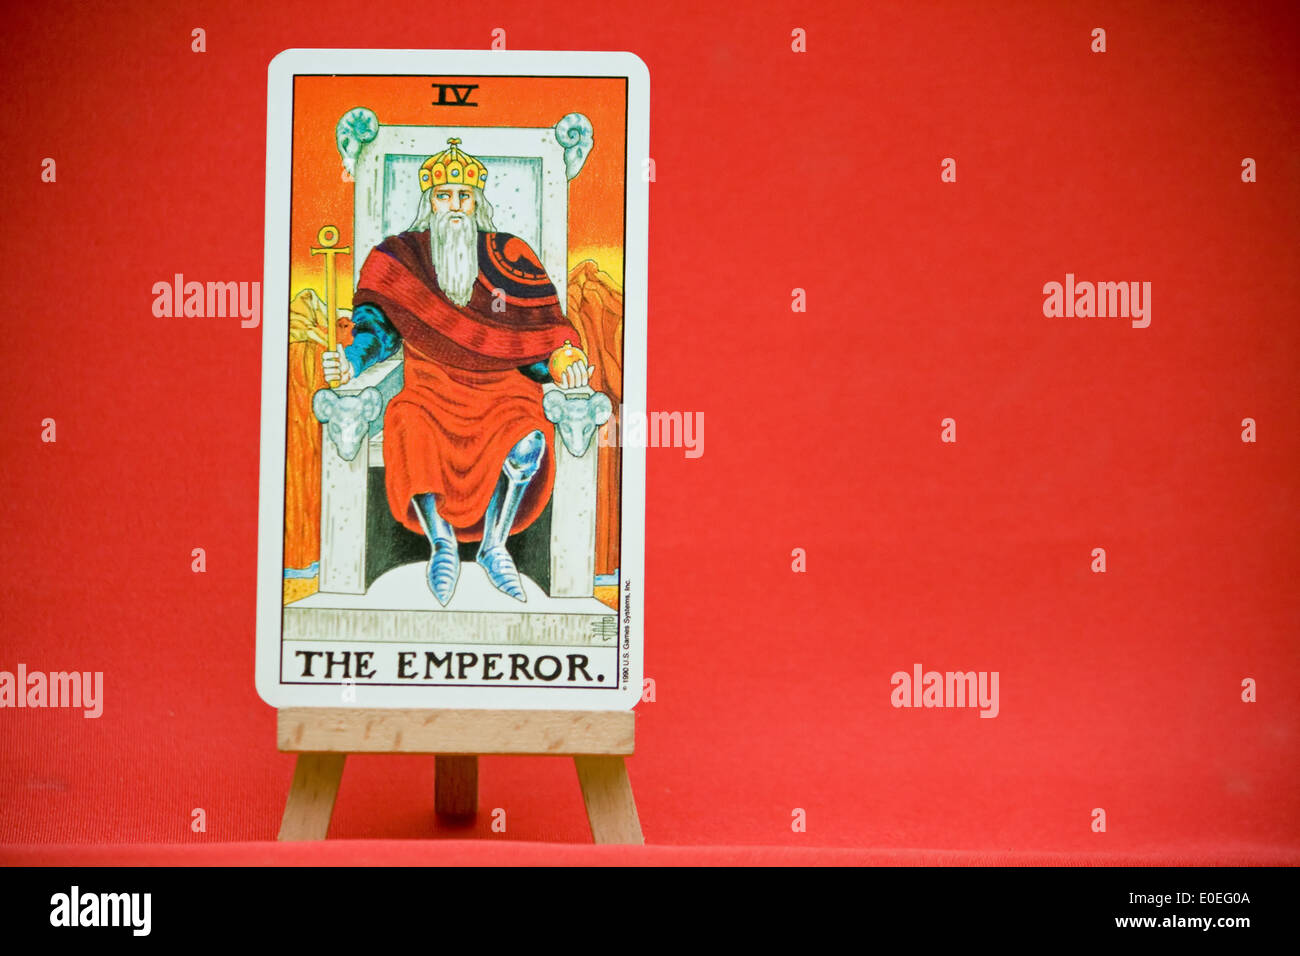 The Emperor. A Major Arcana tarot card. Stock Photo